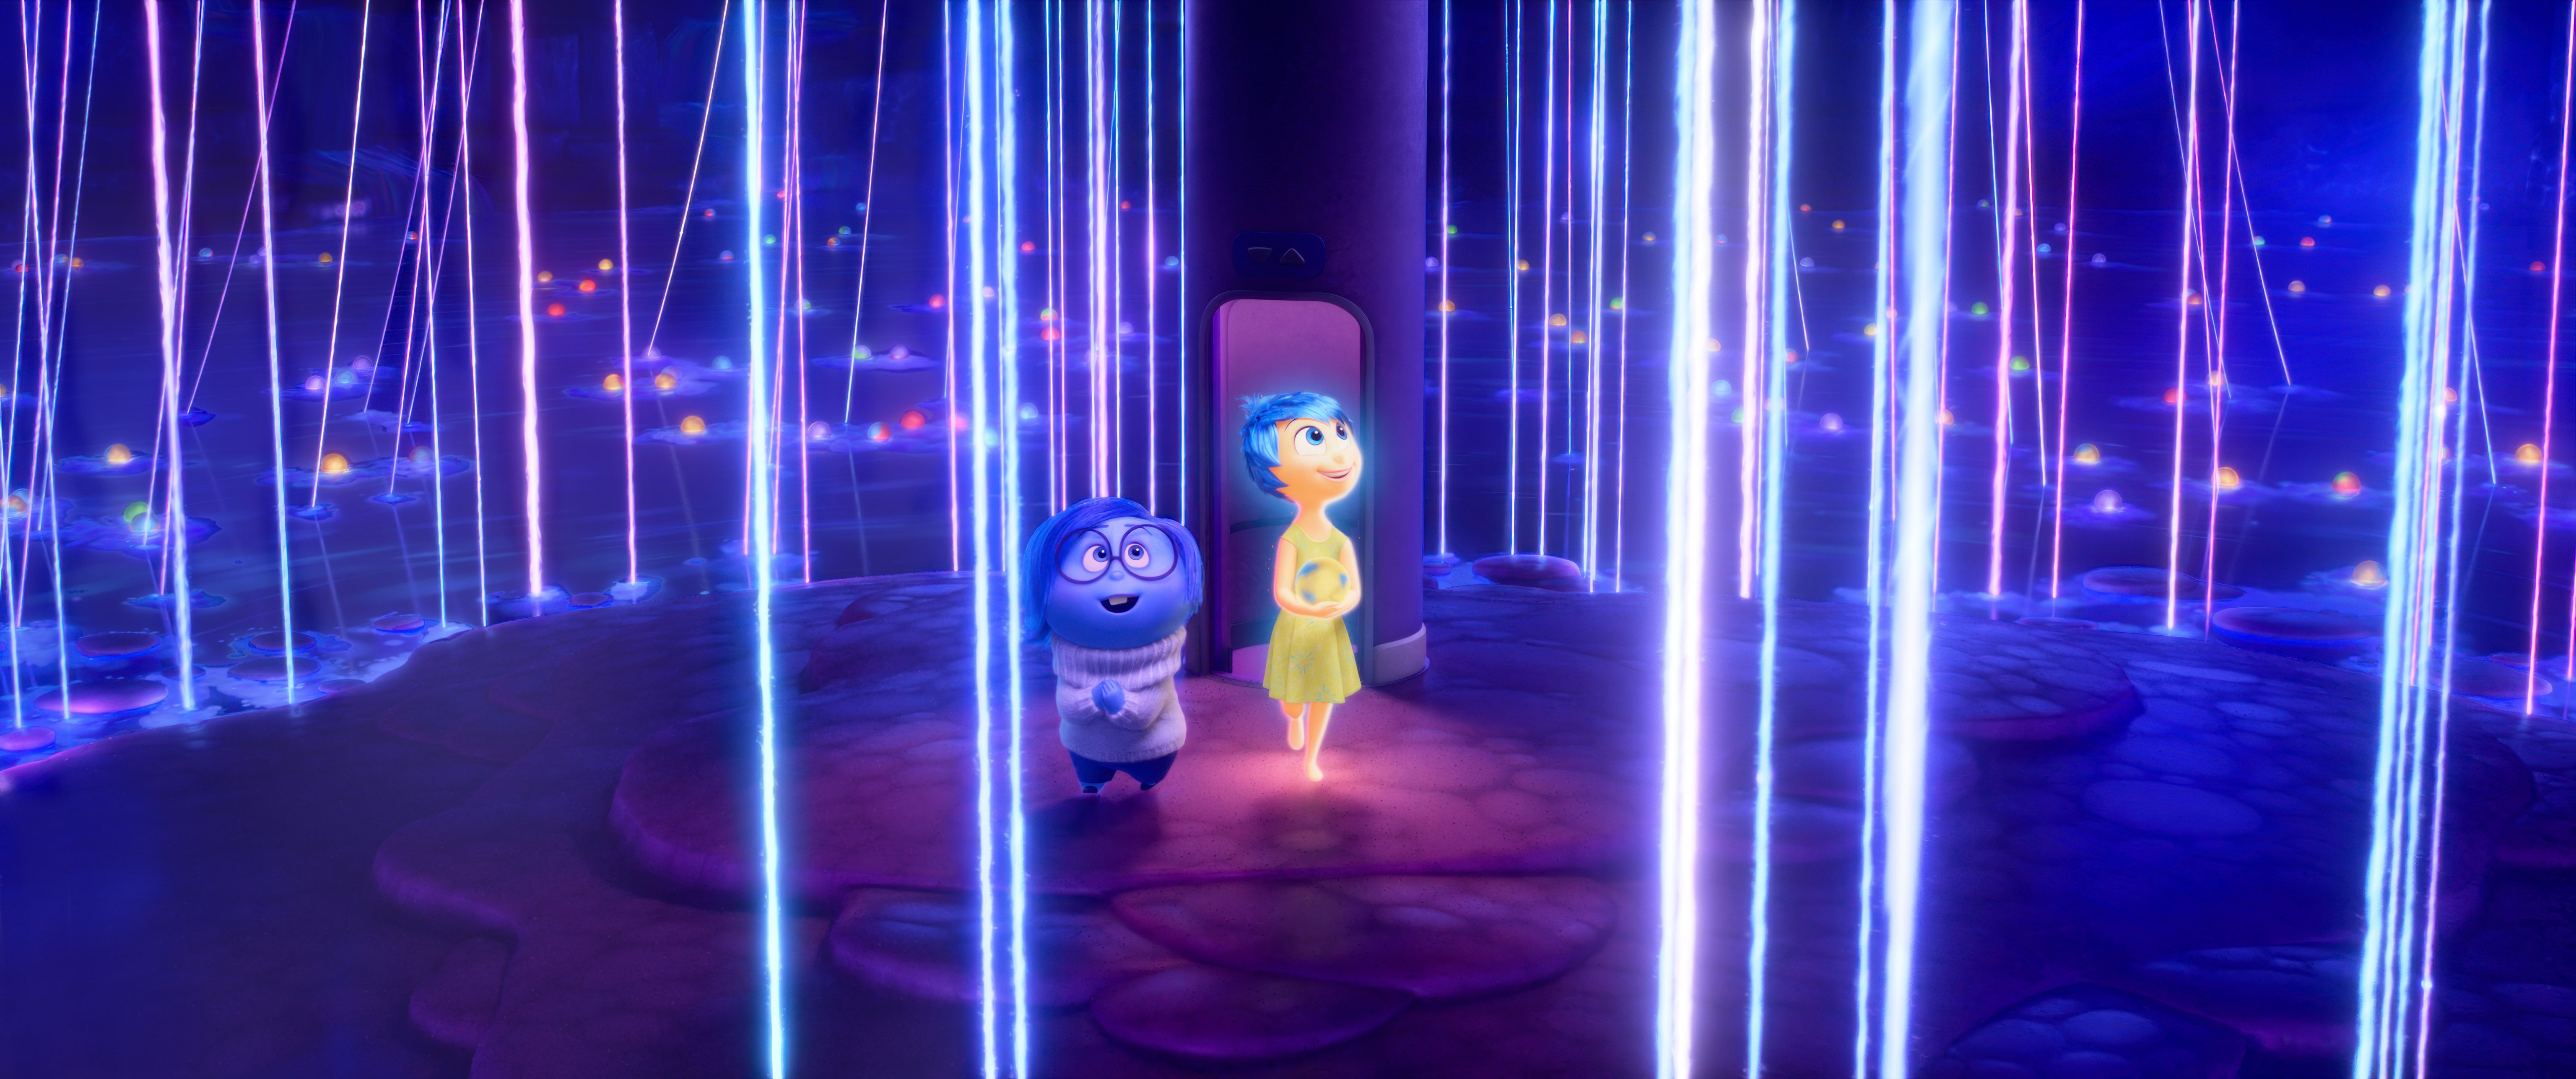 Глава Pixar подтвердил спин-офф шоу Inside Out